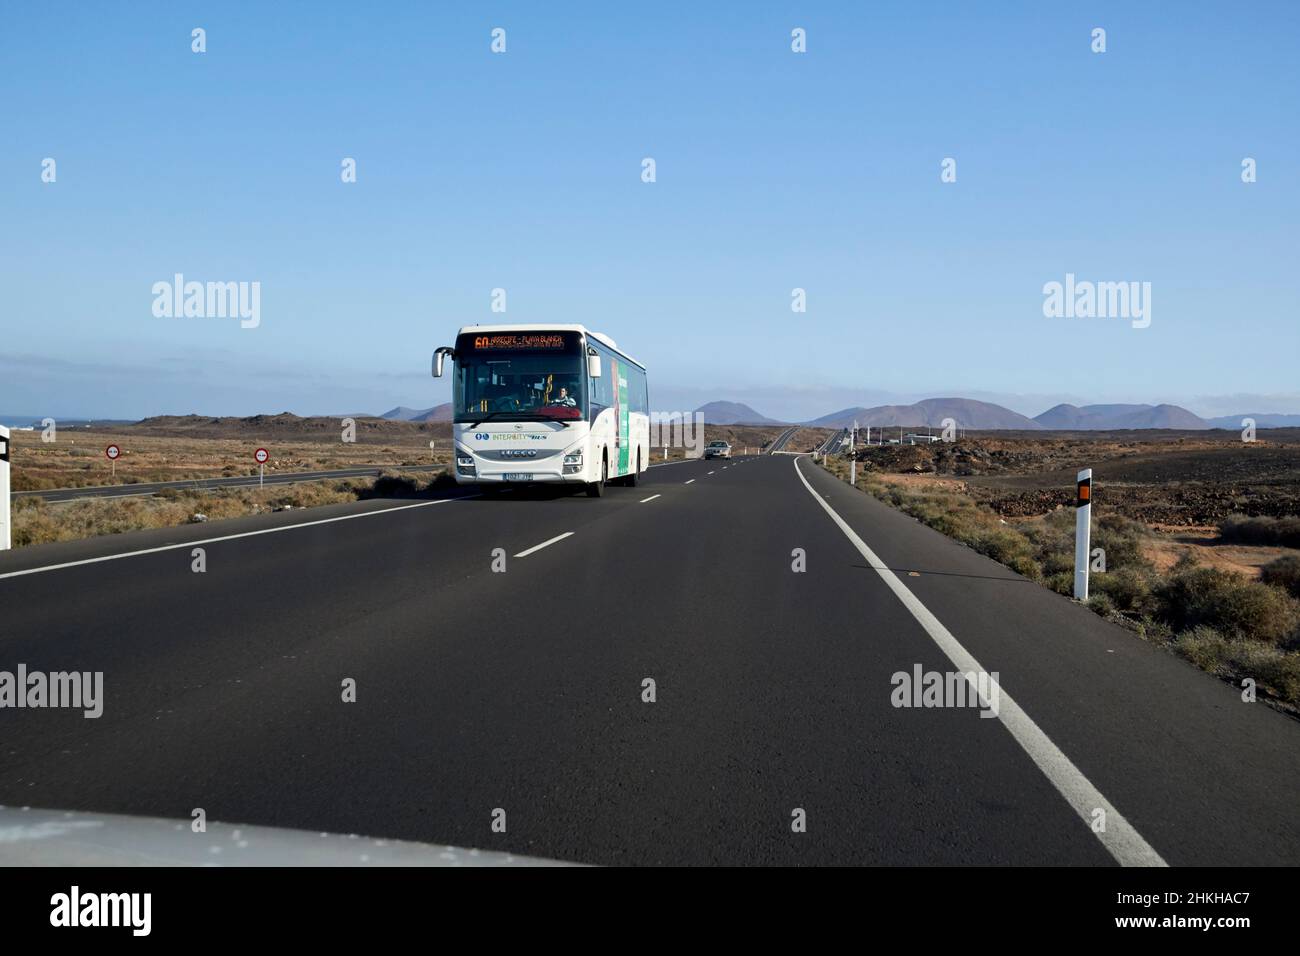 Vorbeifahrende Busfahrt auf der lz-2 Hauptstraße in Lanzarote Kanarische Inseln Spanien Stockfoto